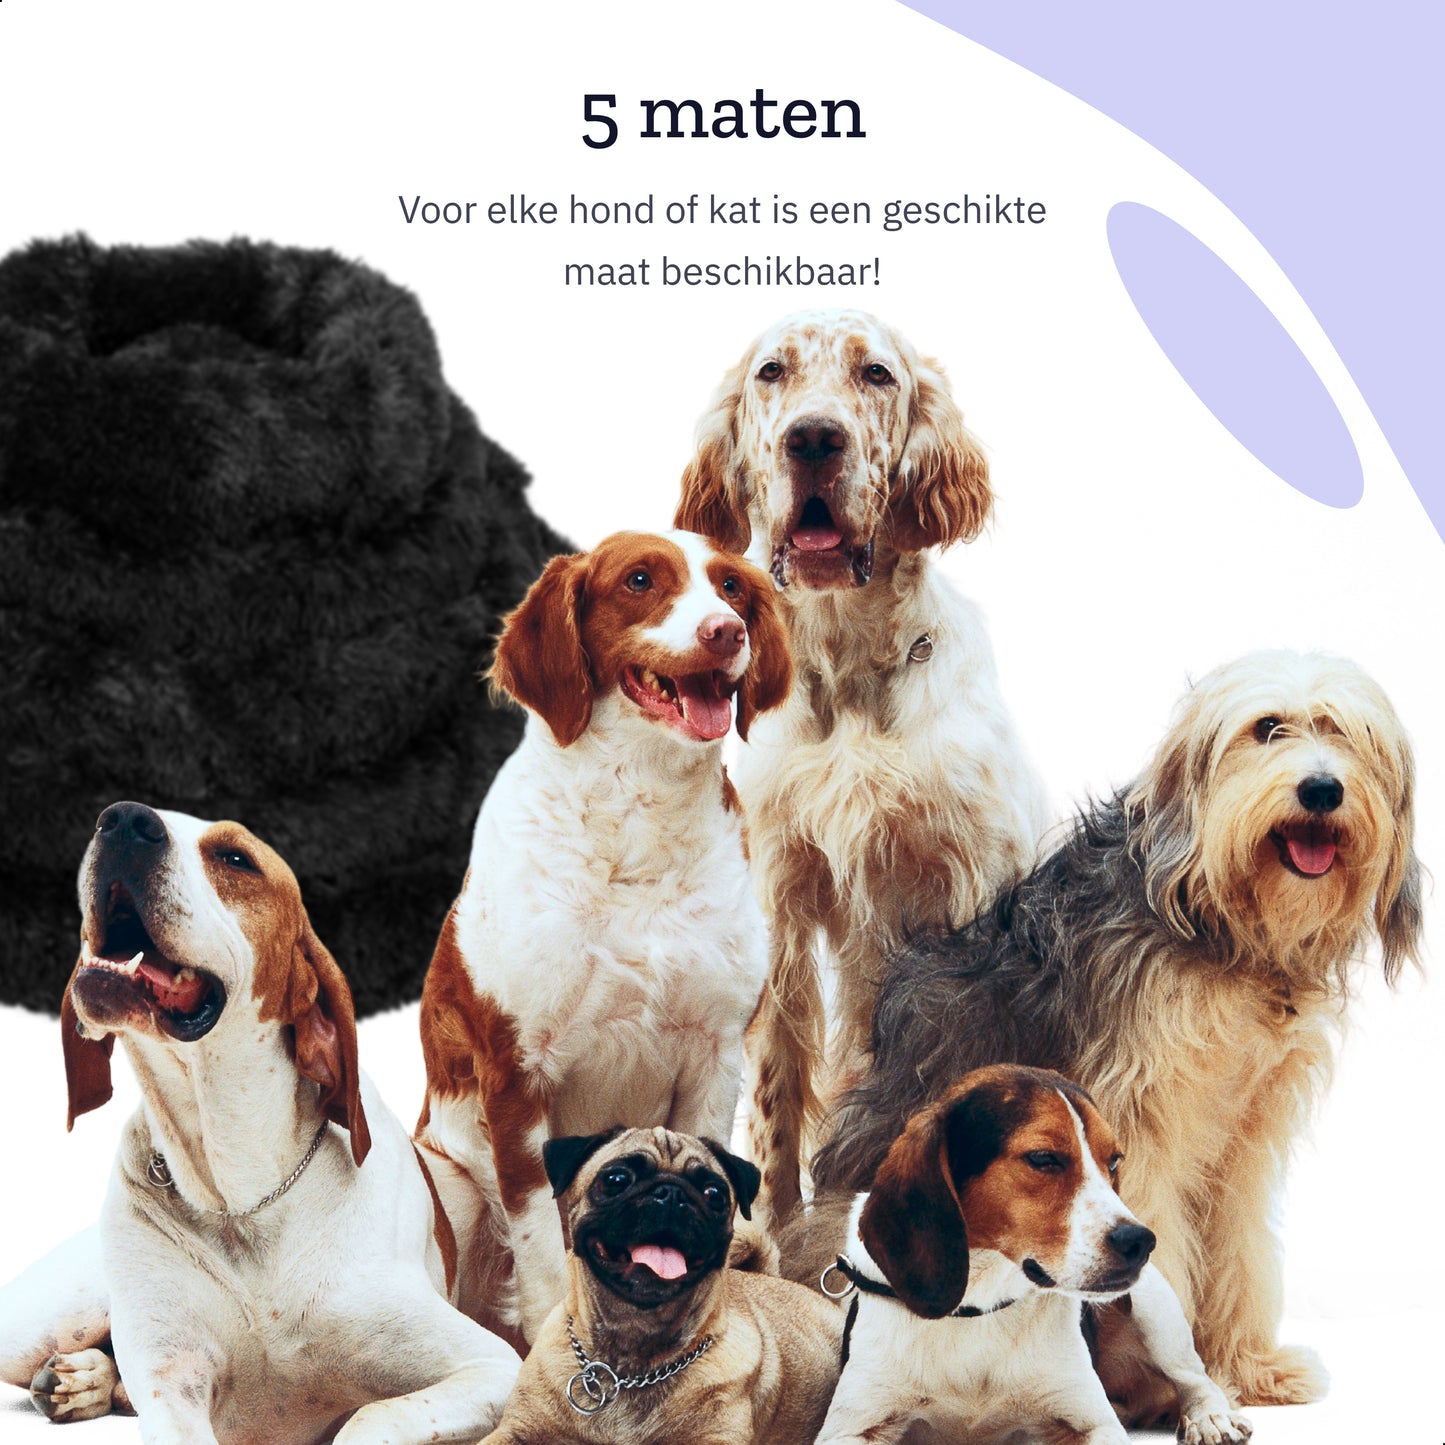 All 4 Pets Supply® Hondenmand Donut - Maat L - Geschikt Voor Honden Tot 60 cm